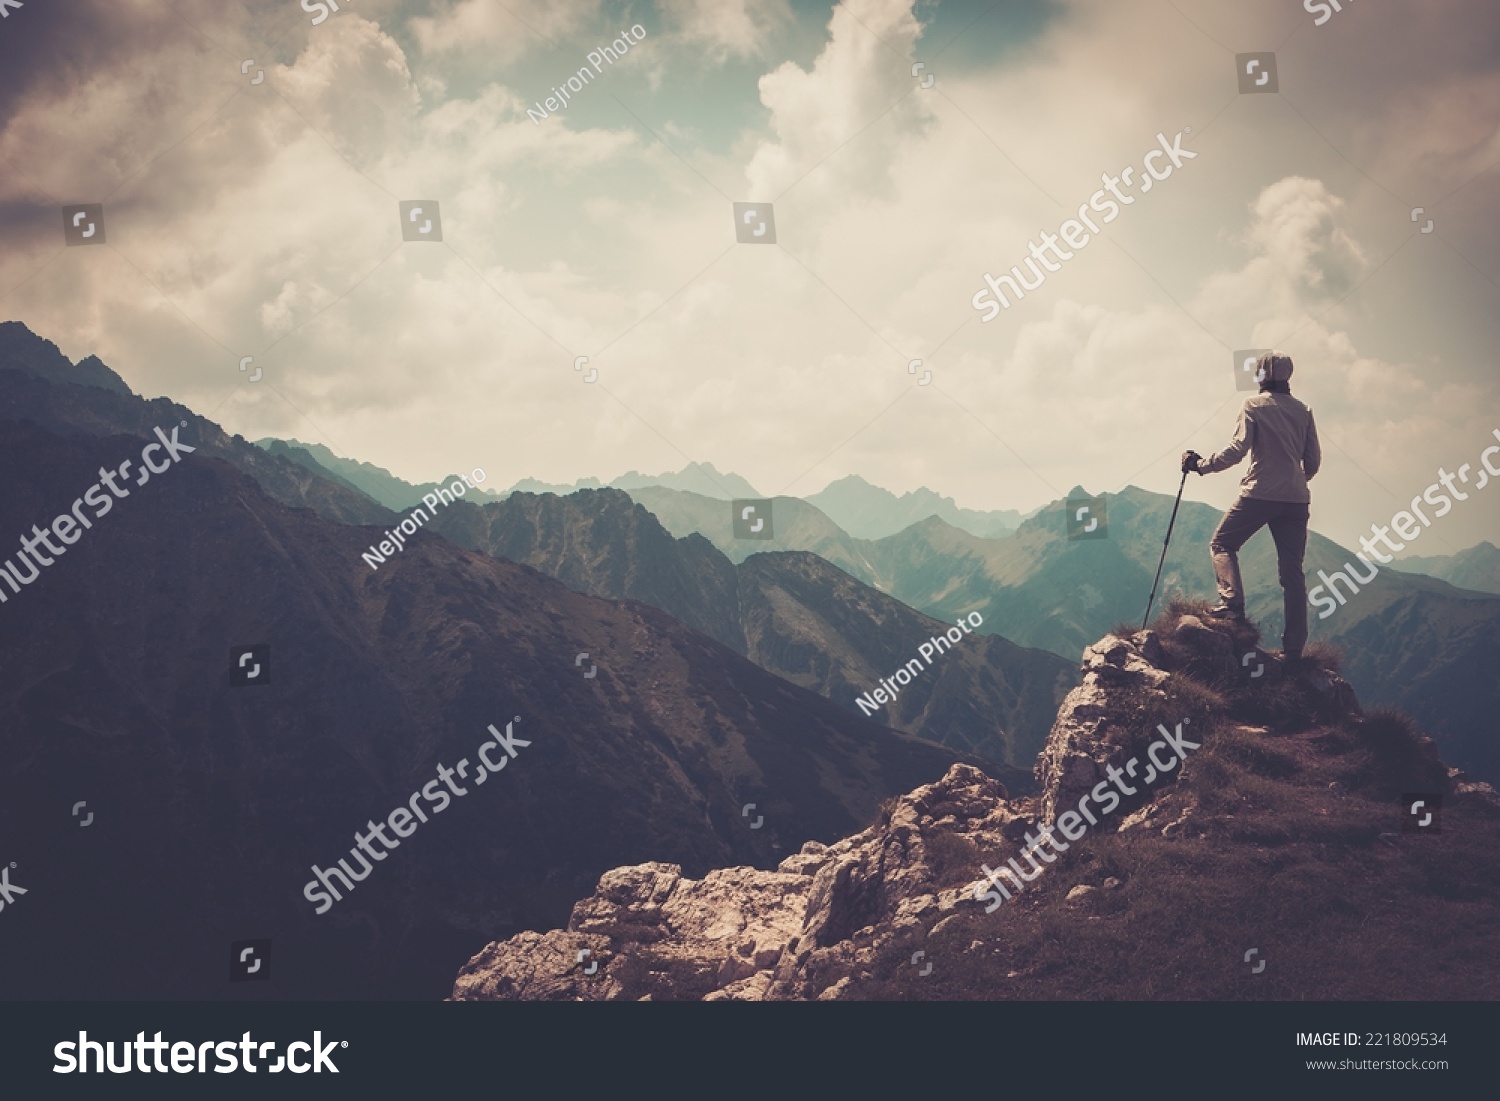 Frau Wanderer auf einem Gipfel eines Berges #221809534